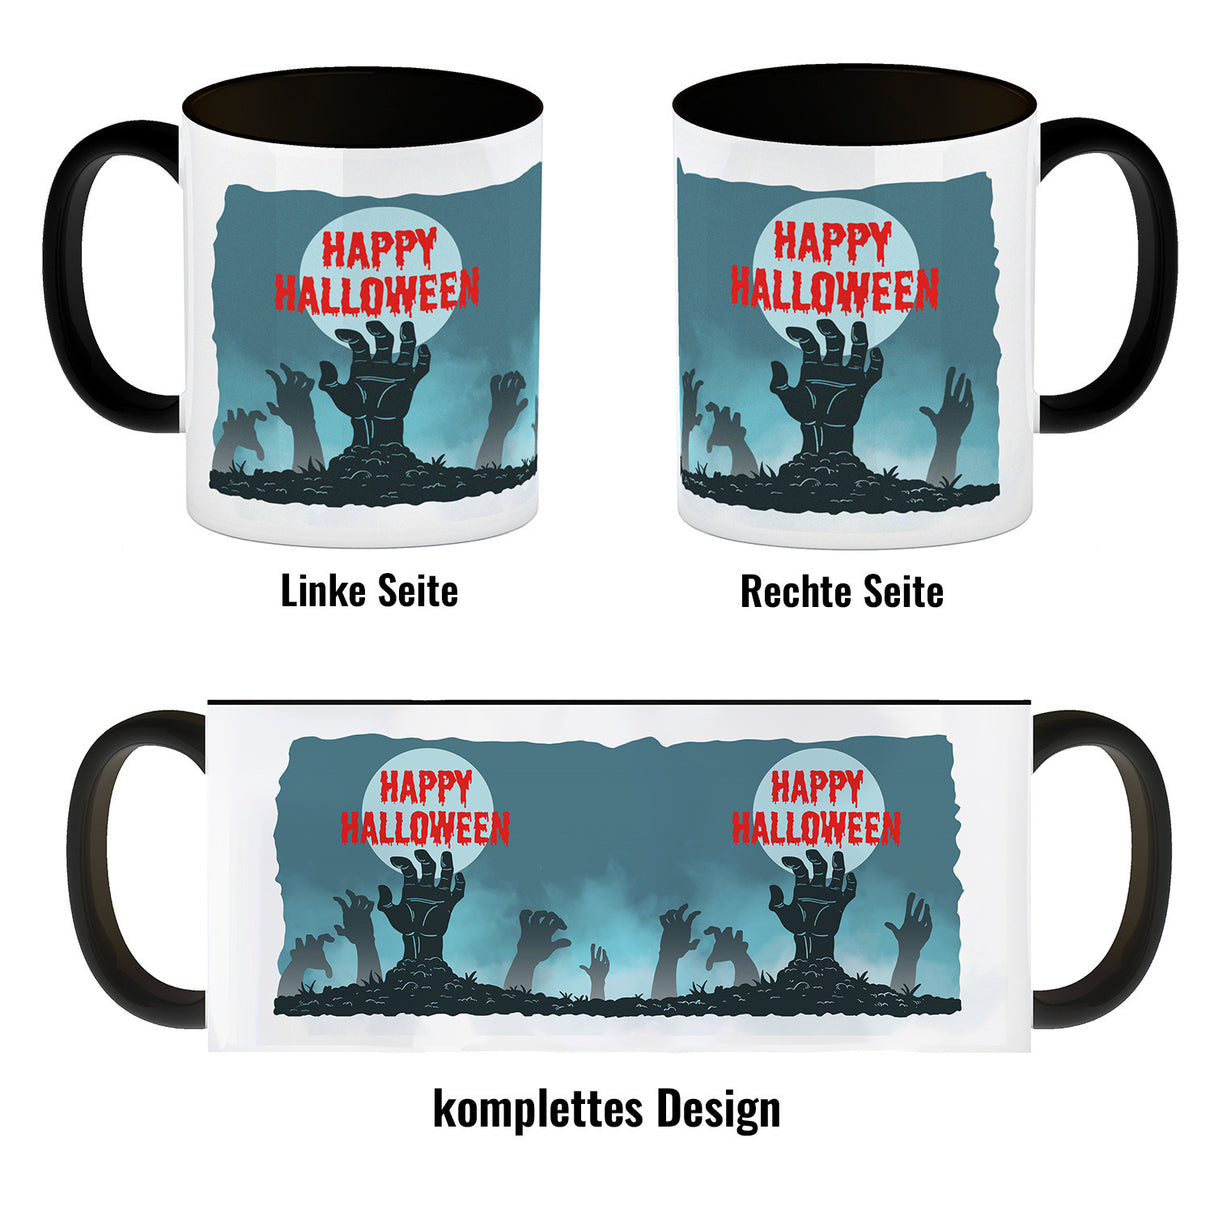 Happy Halloween Kaffeebecher mit gruseligen Zombiehänden